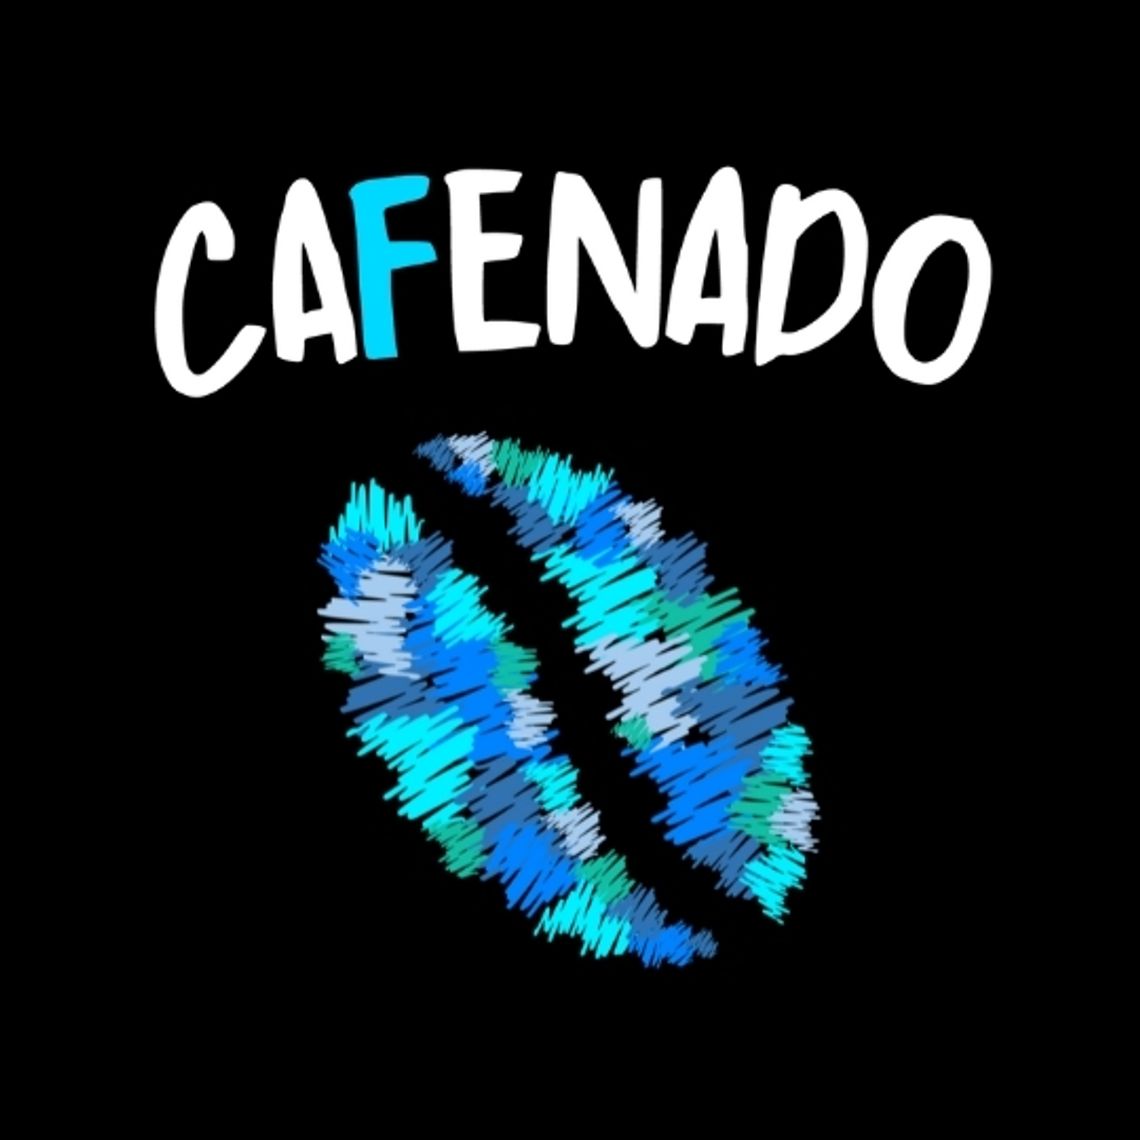 Cafenado